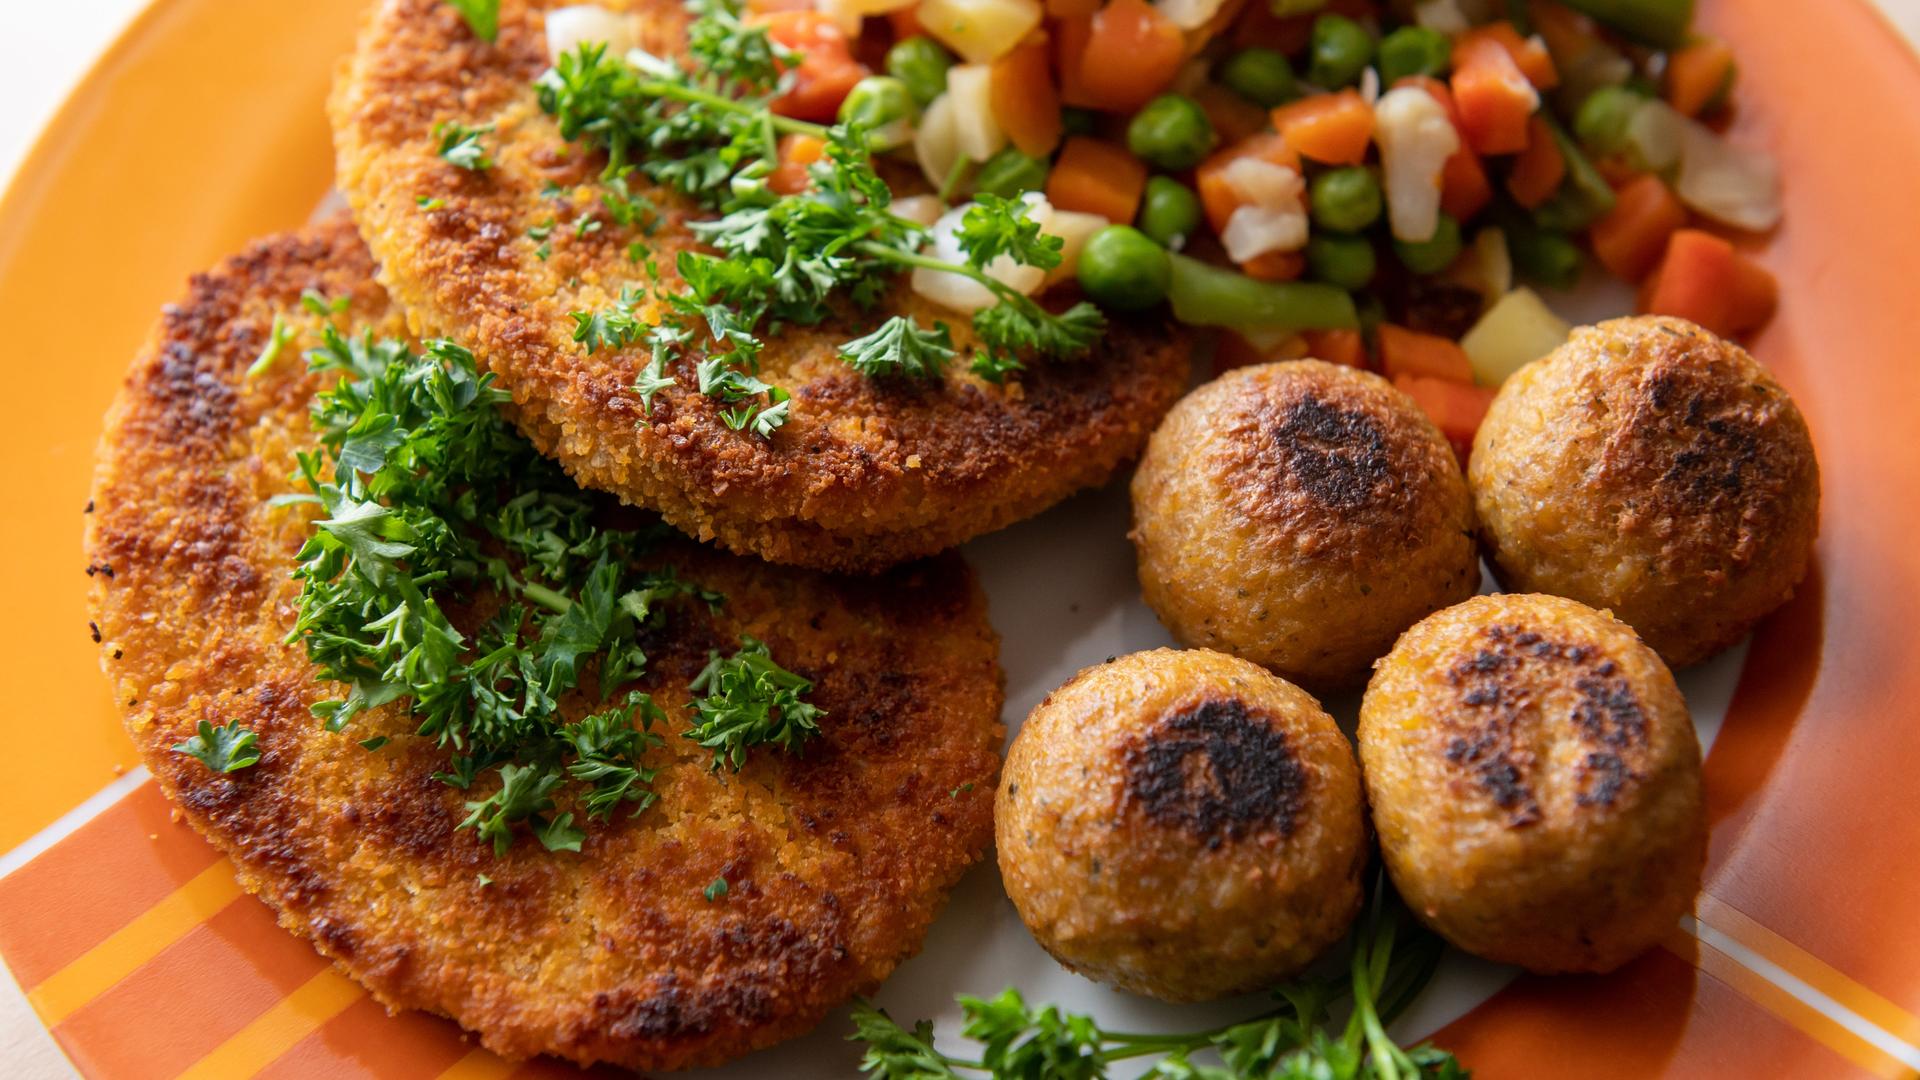 Vegane Falafel, vegane Schnitzel und Gemüse liegen auf einem Teller.